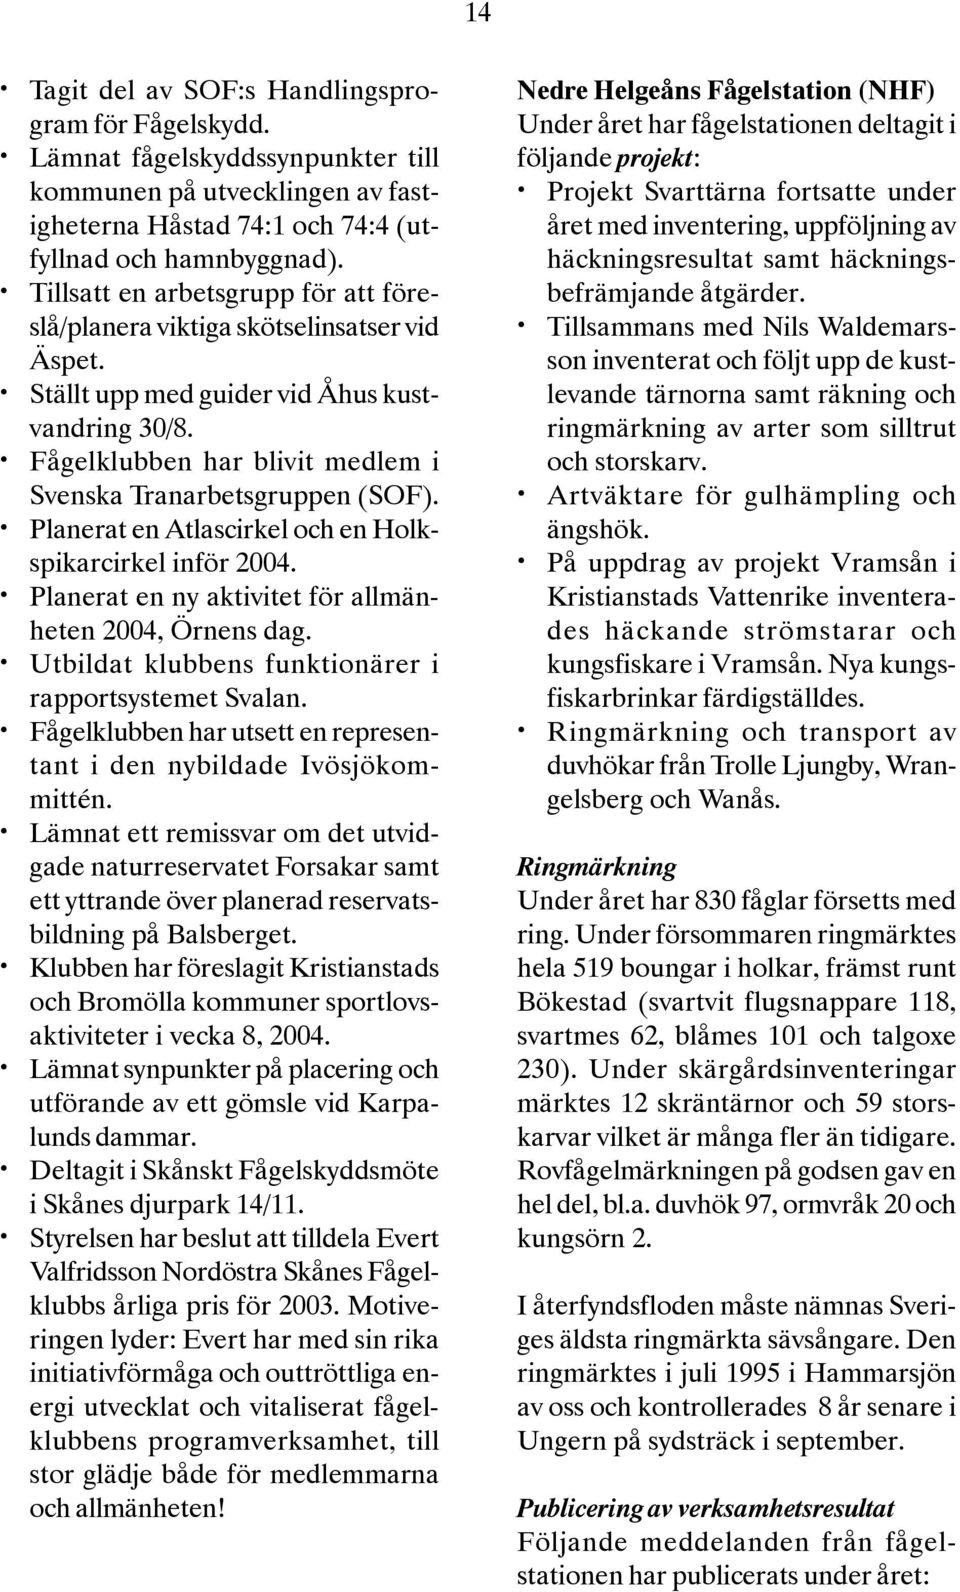 Planerat en Atlascirkel och en Holkspikarcirkel inför 2004. Planerat en ny aktivitet för allmänheten 2004, Örnens dag. Utbildat klubbens funktionärer i rapportsystemet Svalan.